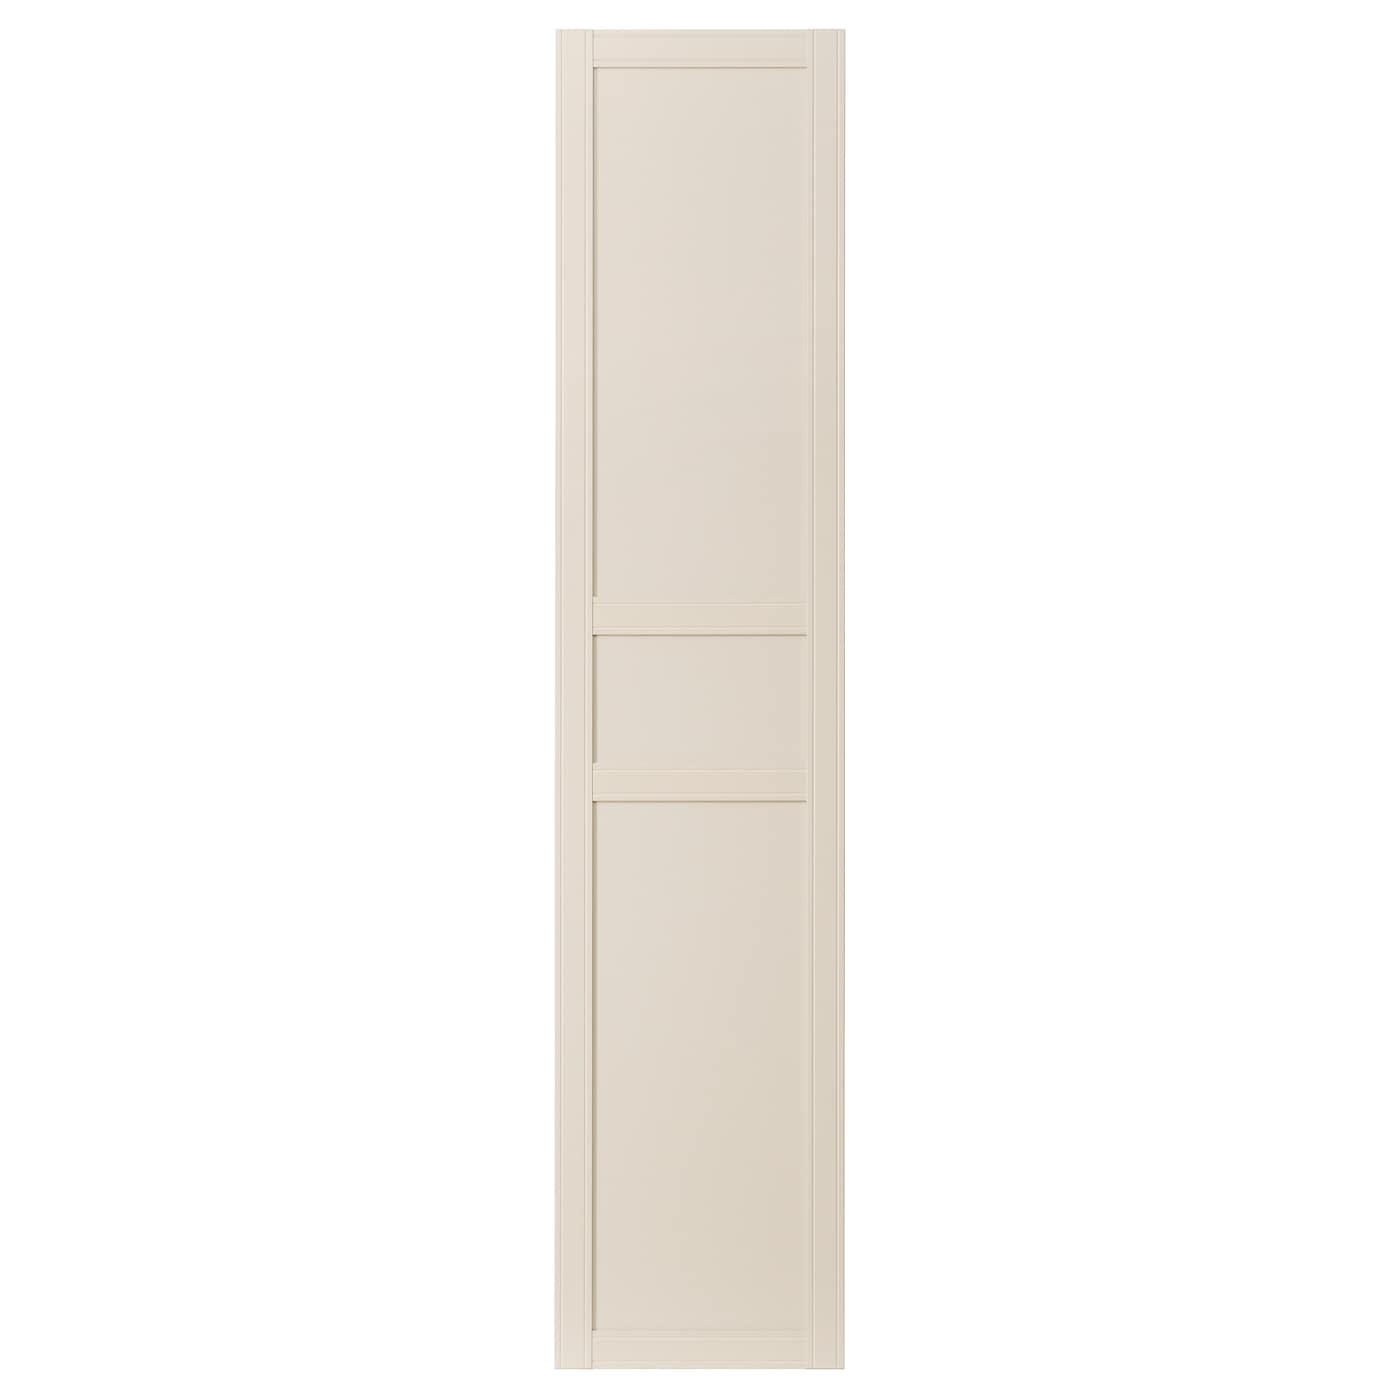 Дверца шкафа - FLISBERGET IKEA/ФЛИСБЕРГЕТ ИКЕА, 50х229 см, светло-бежевый